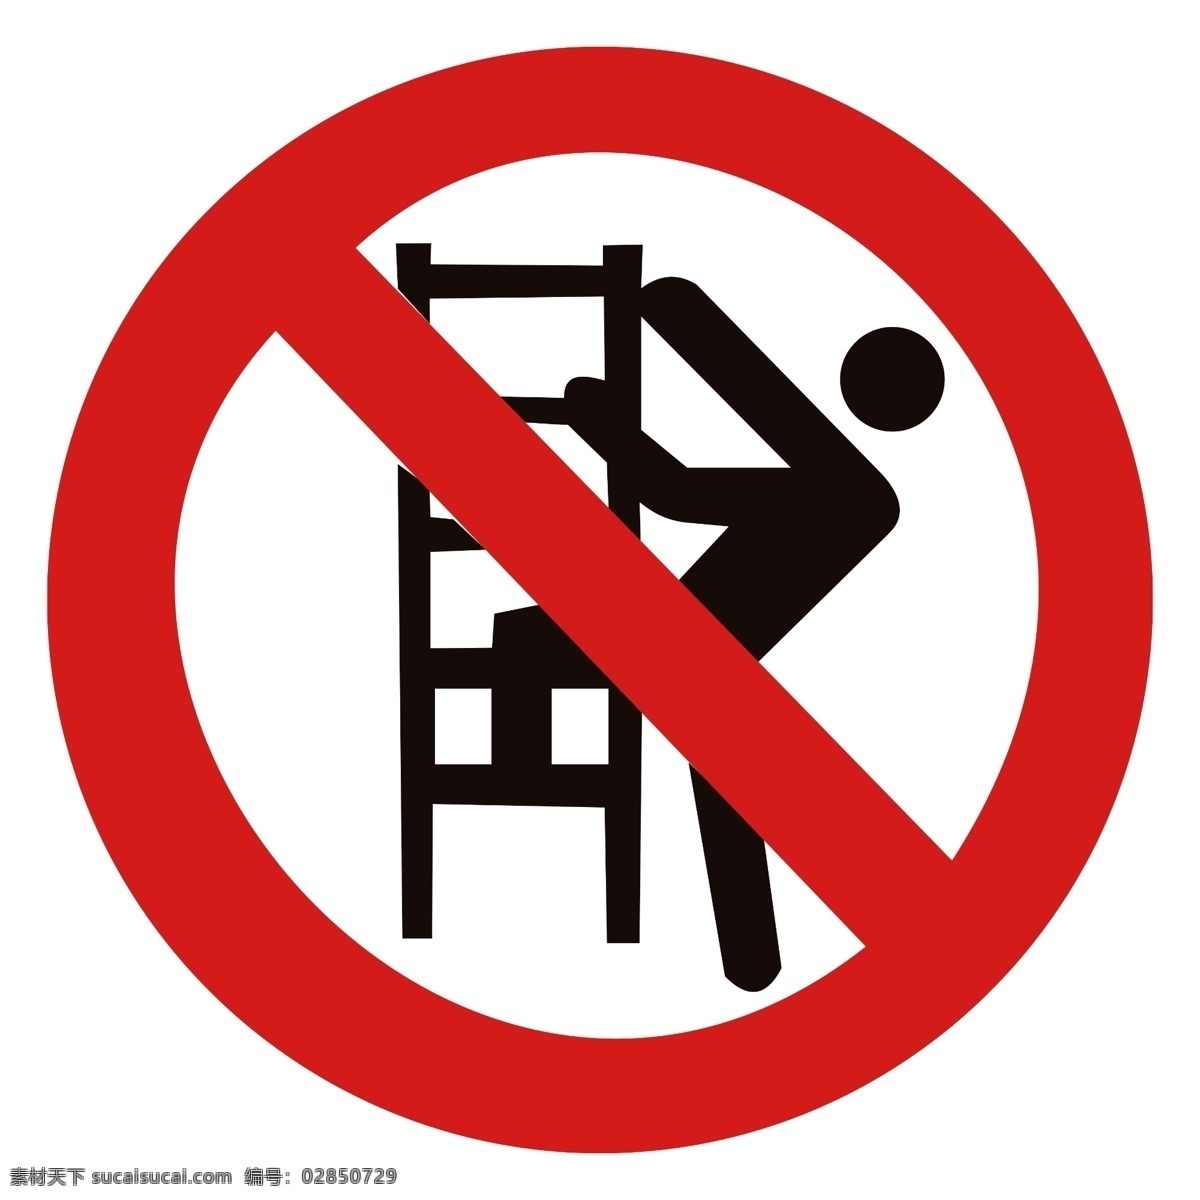 禁止攀爬 严禁攀爬 禁止攀爬标志 禁止攀爬图标 严禁攀爬标志 严禁攀爬图标